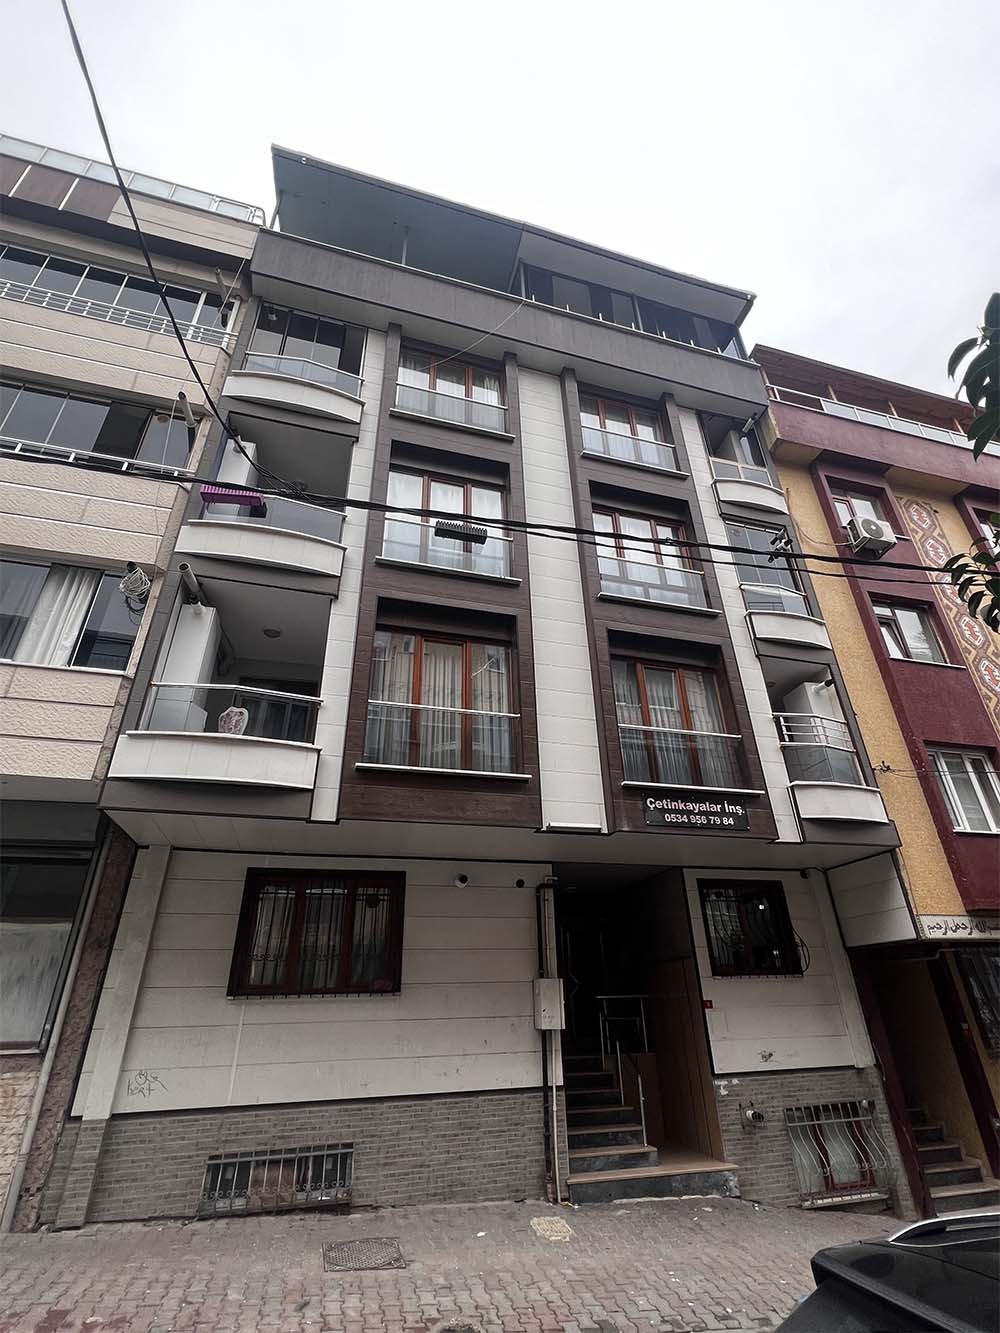 Çetinkayalar - İstanbul Bağcılar Göztepe Mah image